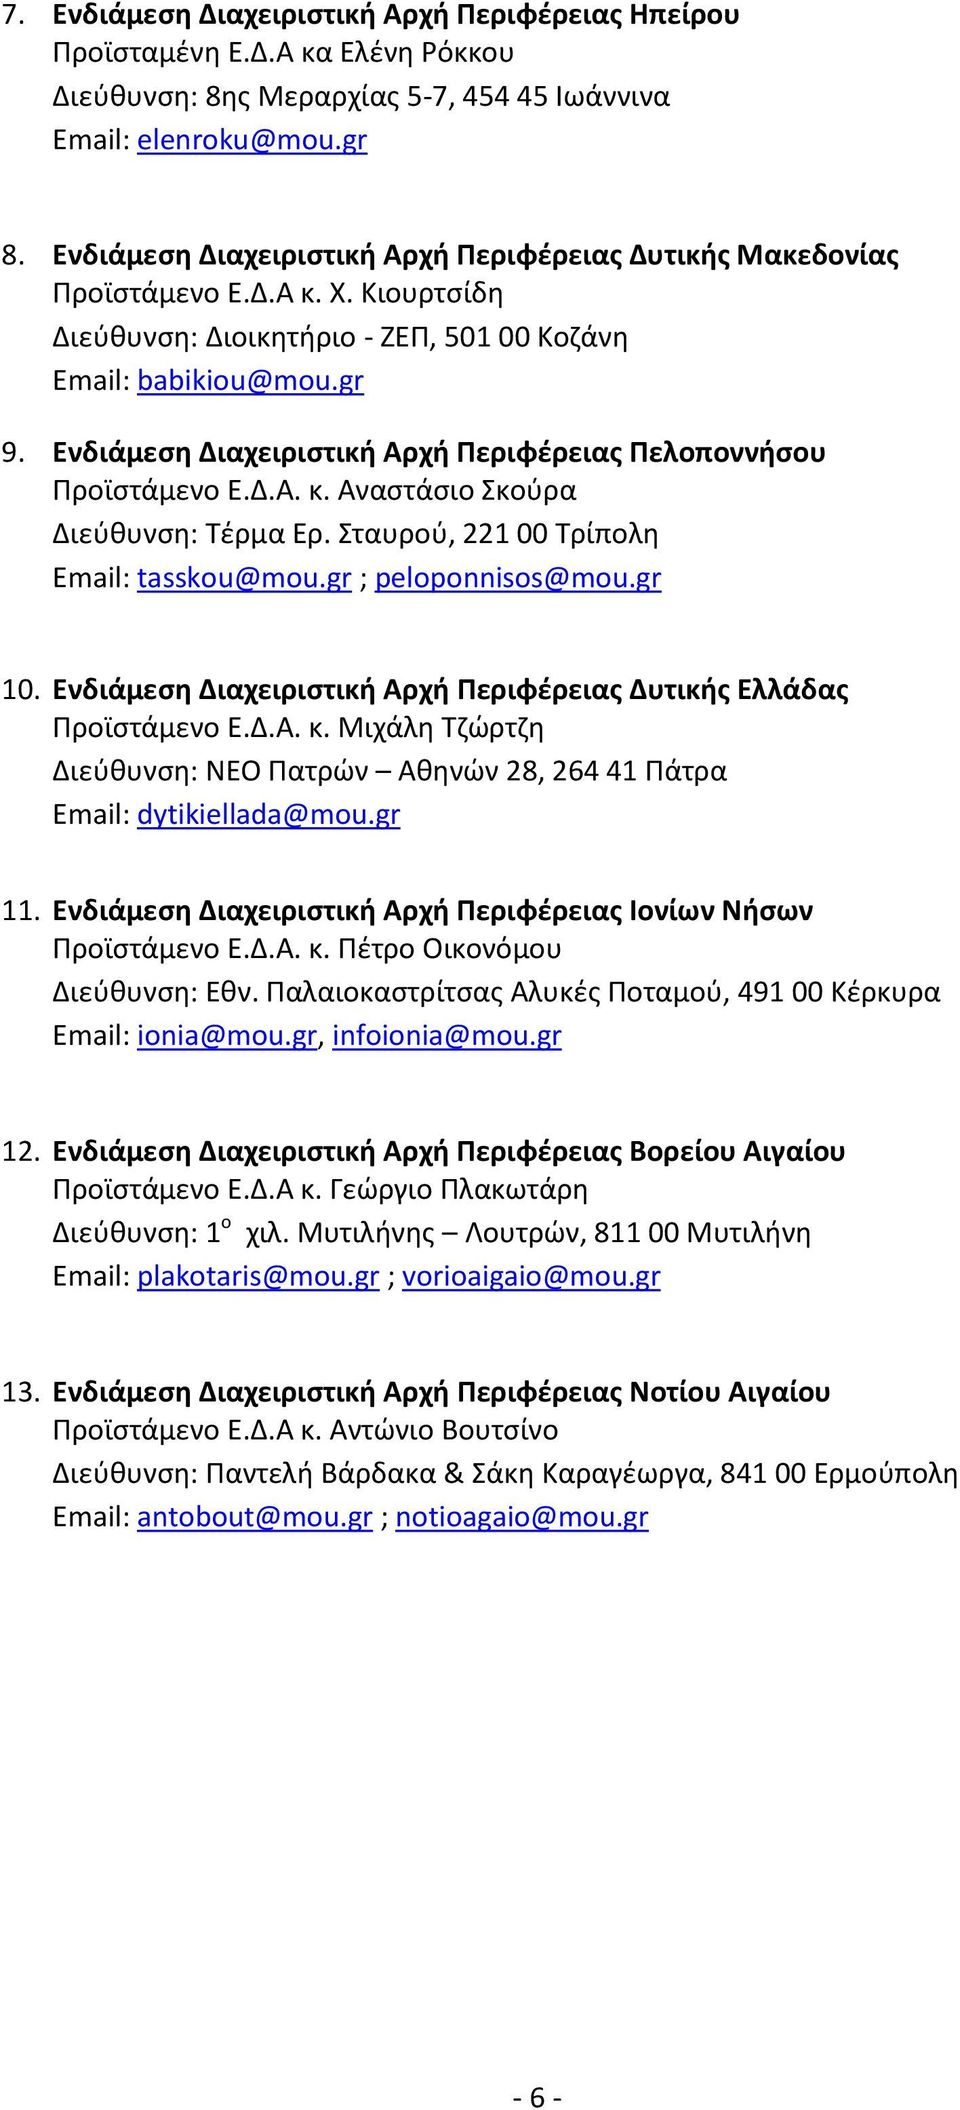 Ενδιάμεση Διαχειριστική Αρχή Περιφέρειας Πελοποννήσου Προϊστάμενο Ε.Δ.Α. κ. Αναστάσιο Σκούρα Διεύθυνση: Τέρμα Ερ. Σταυρού, 221 00 Τρίπολη Email: tasskou@mou.gr ; peloponnisos@mou.gr 10.